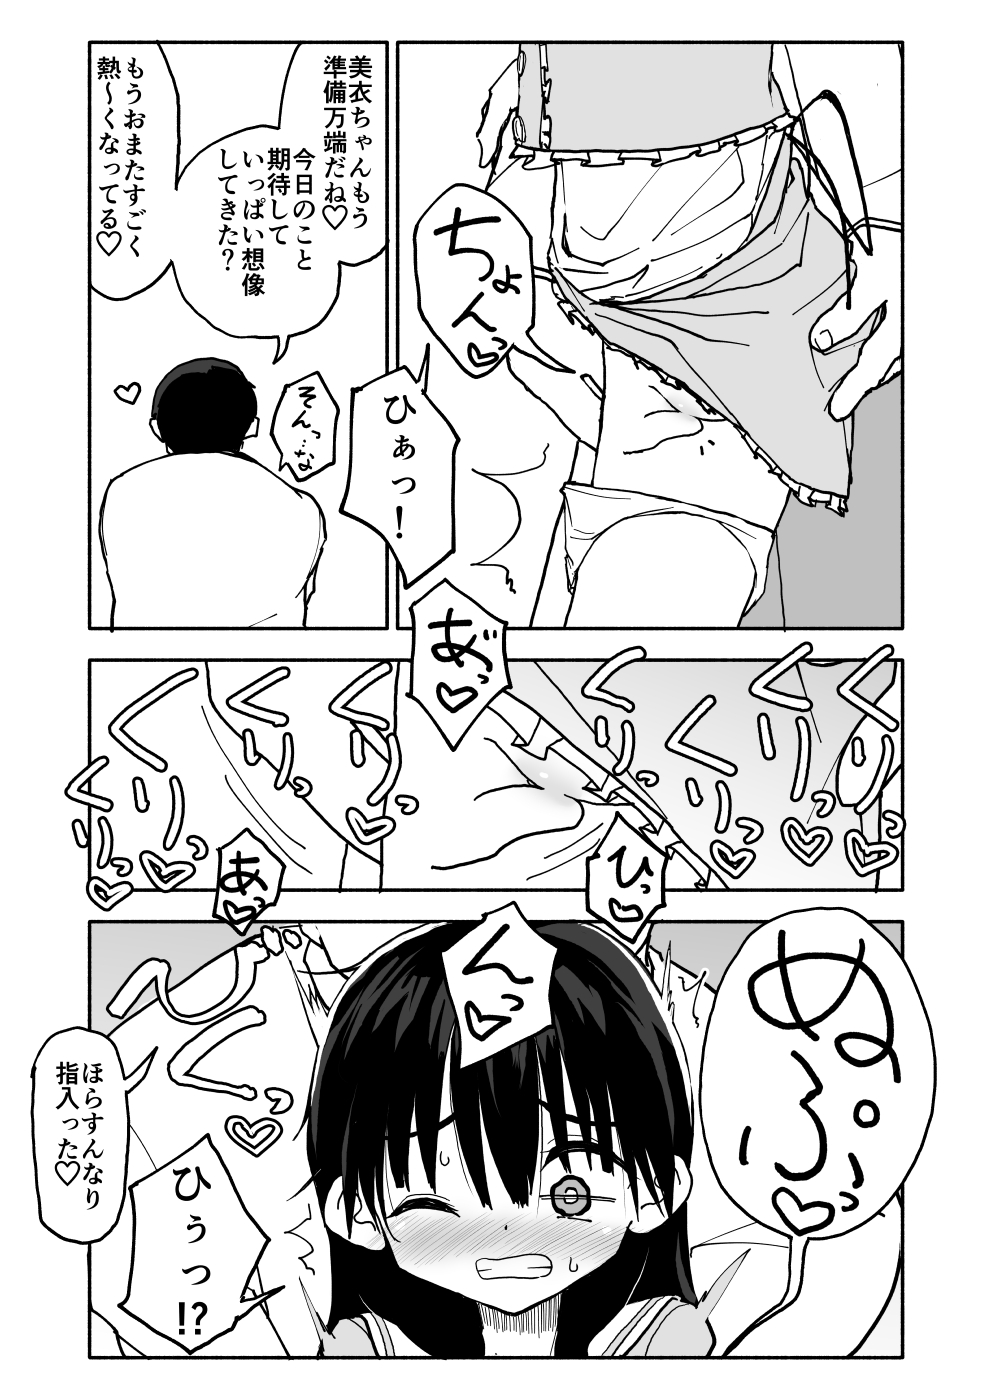 [Futotta Obasan] Okashi Tsukuri Idol ☆ Gimi ! Ecchi na Himitsu no Tokkun manga page 28 full